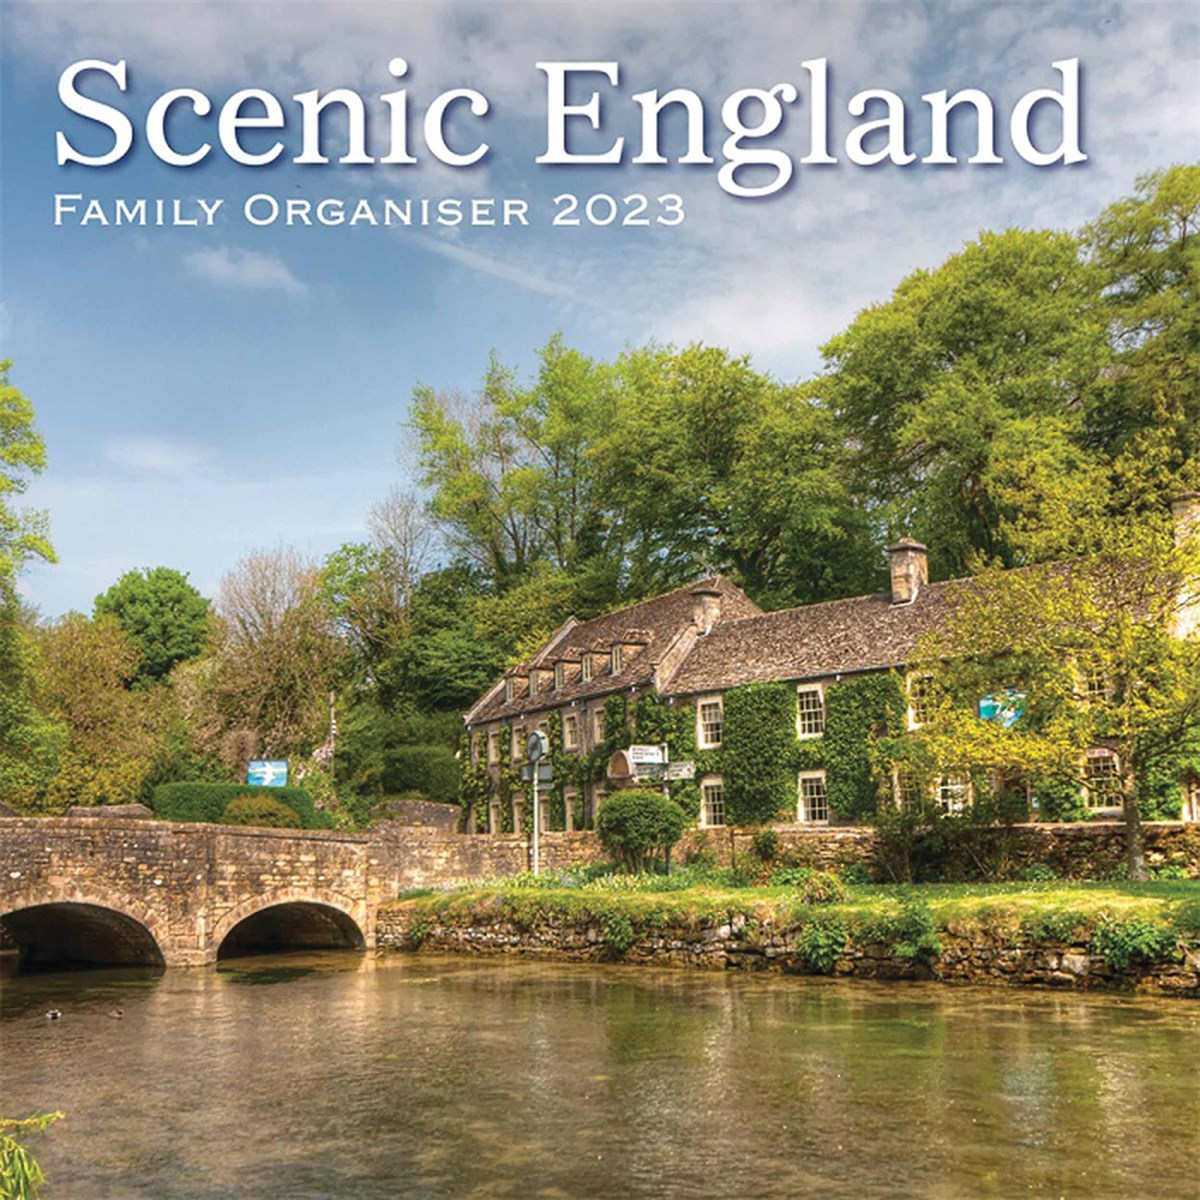 Scenic England Family Organiser 2023